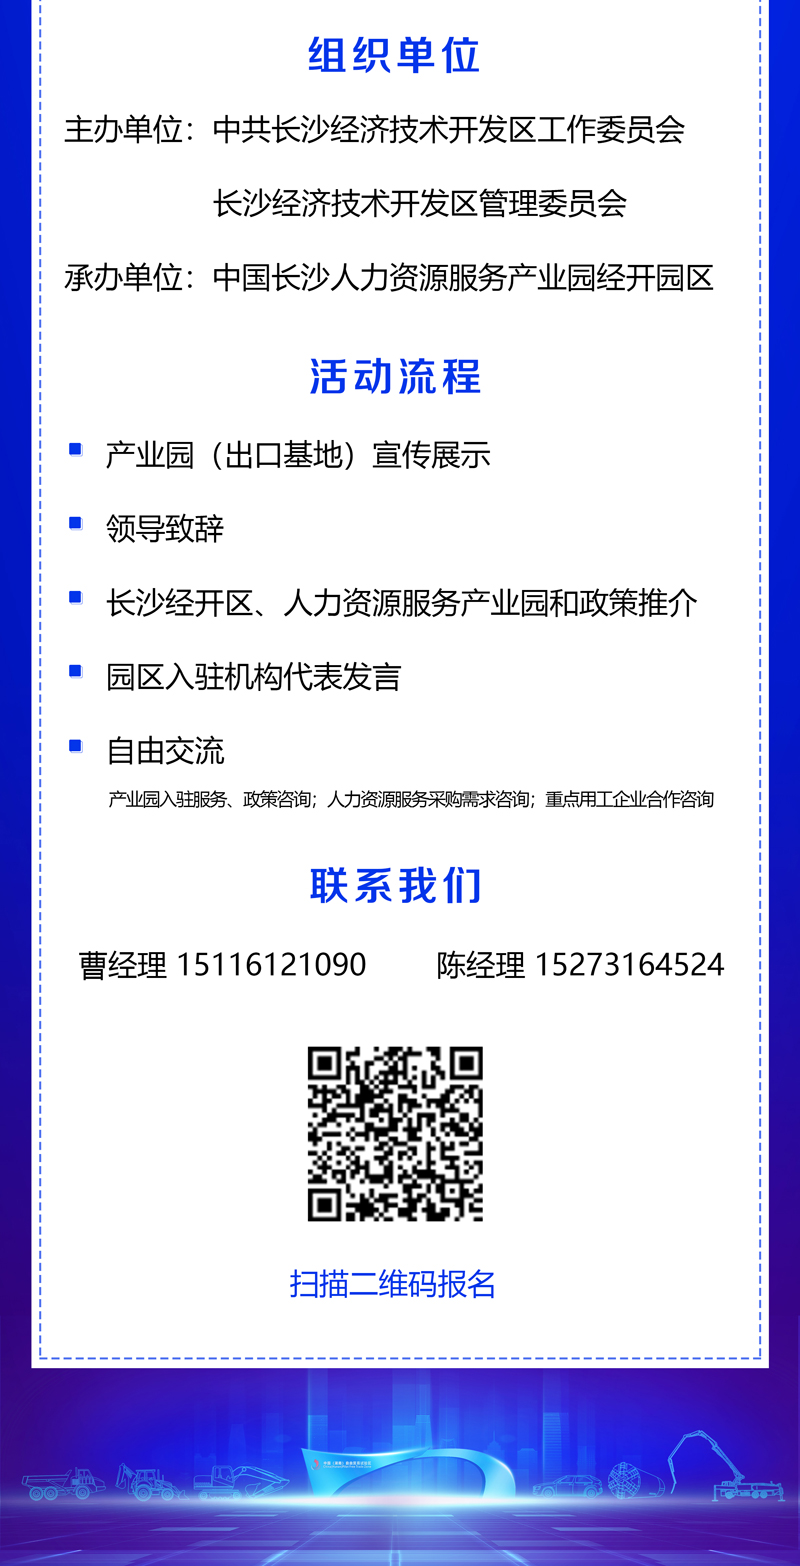 【相约深圳】中国长沙人力资源服务产业园招商推介会邀您报名